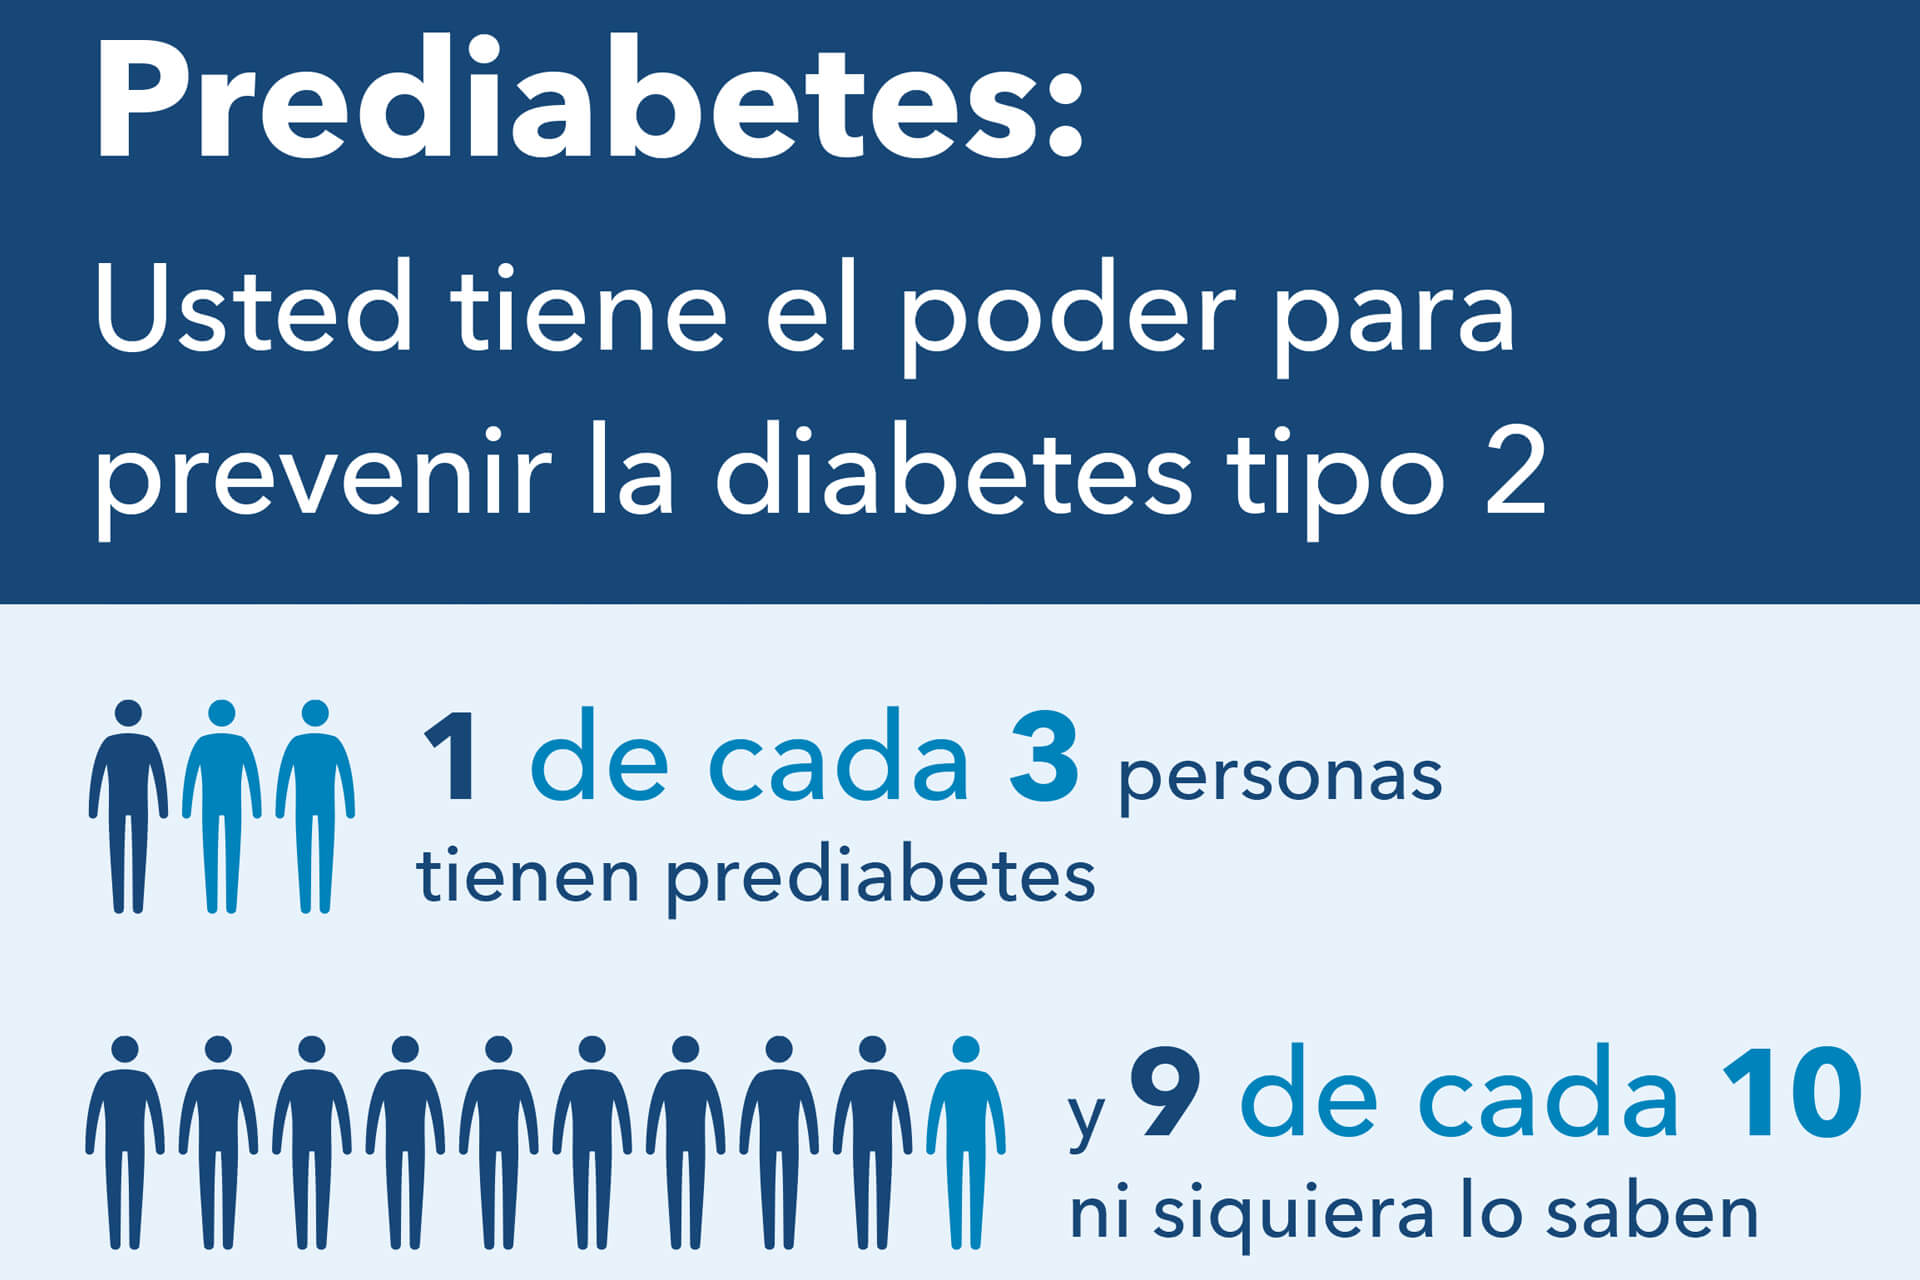 Prediabetes: Usted tiene el poder para prevenir la diabetes tipo 2